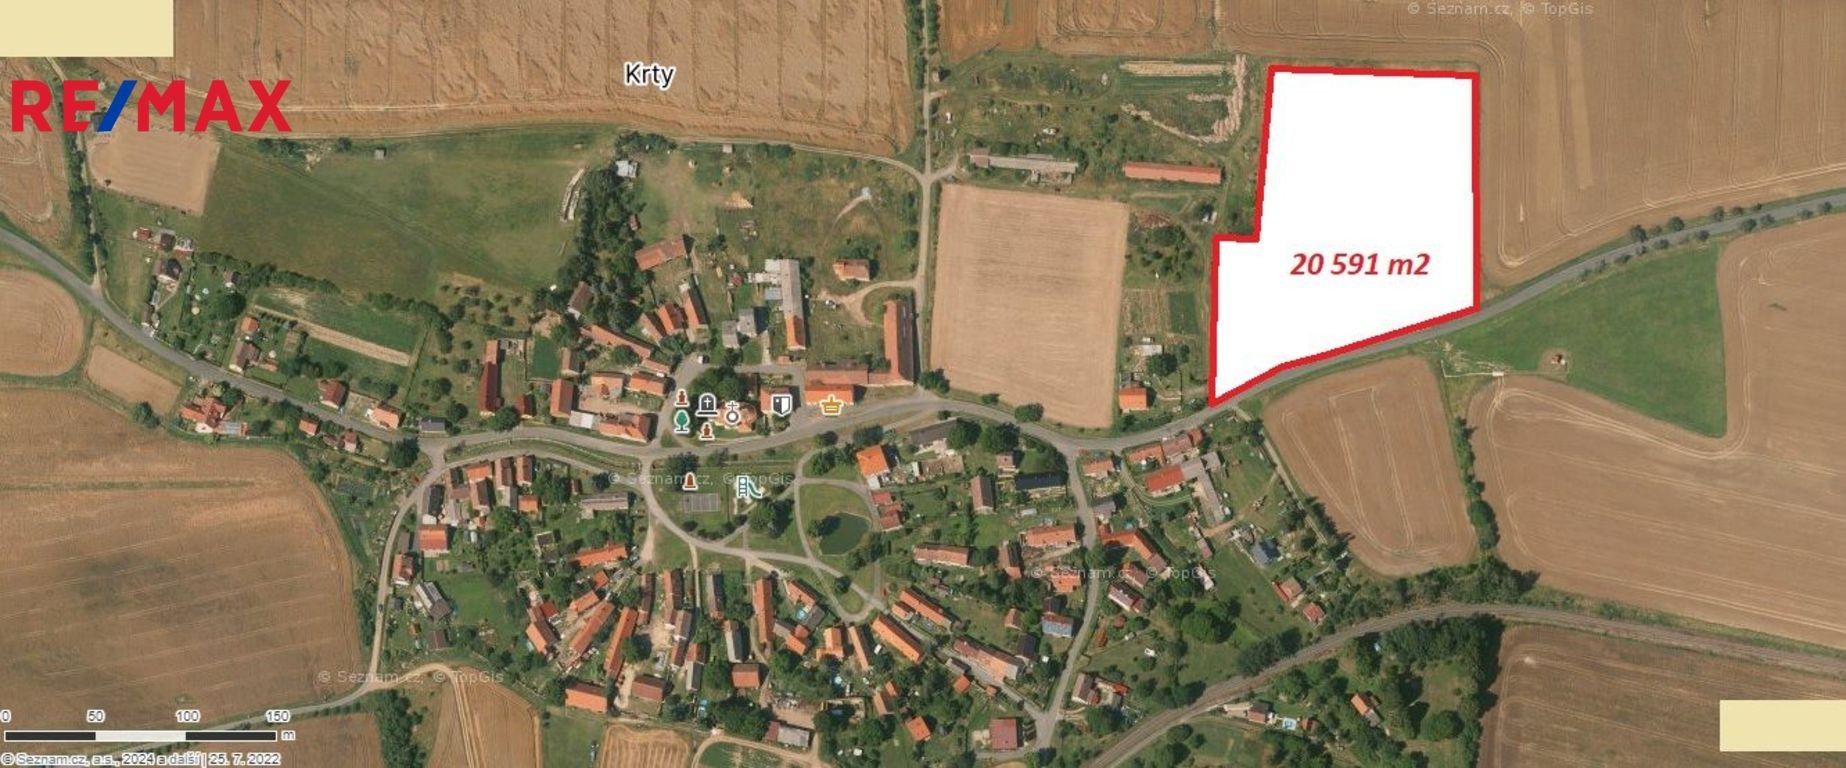 Prodej komerční pozemek - Krty, 20 591 m²